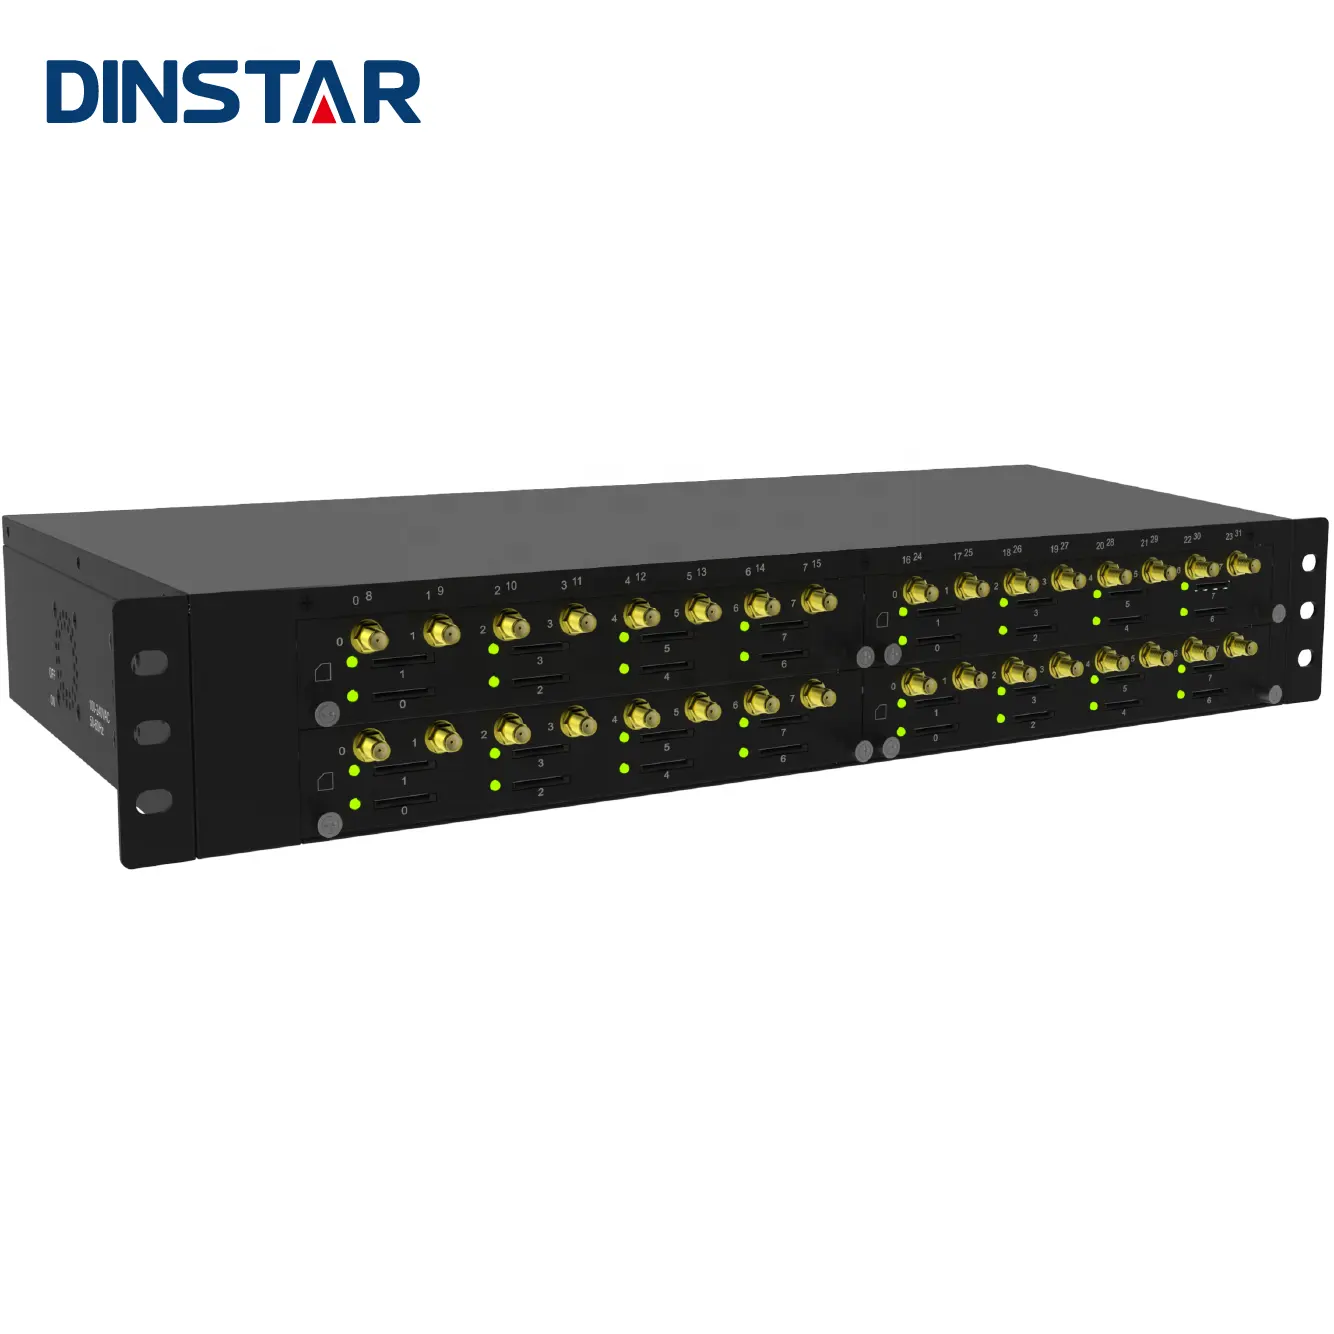 Dinstar กล่องซิม Call Center 3G 4G Lte 32พอร์ต Gsm Voip Gateway